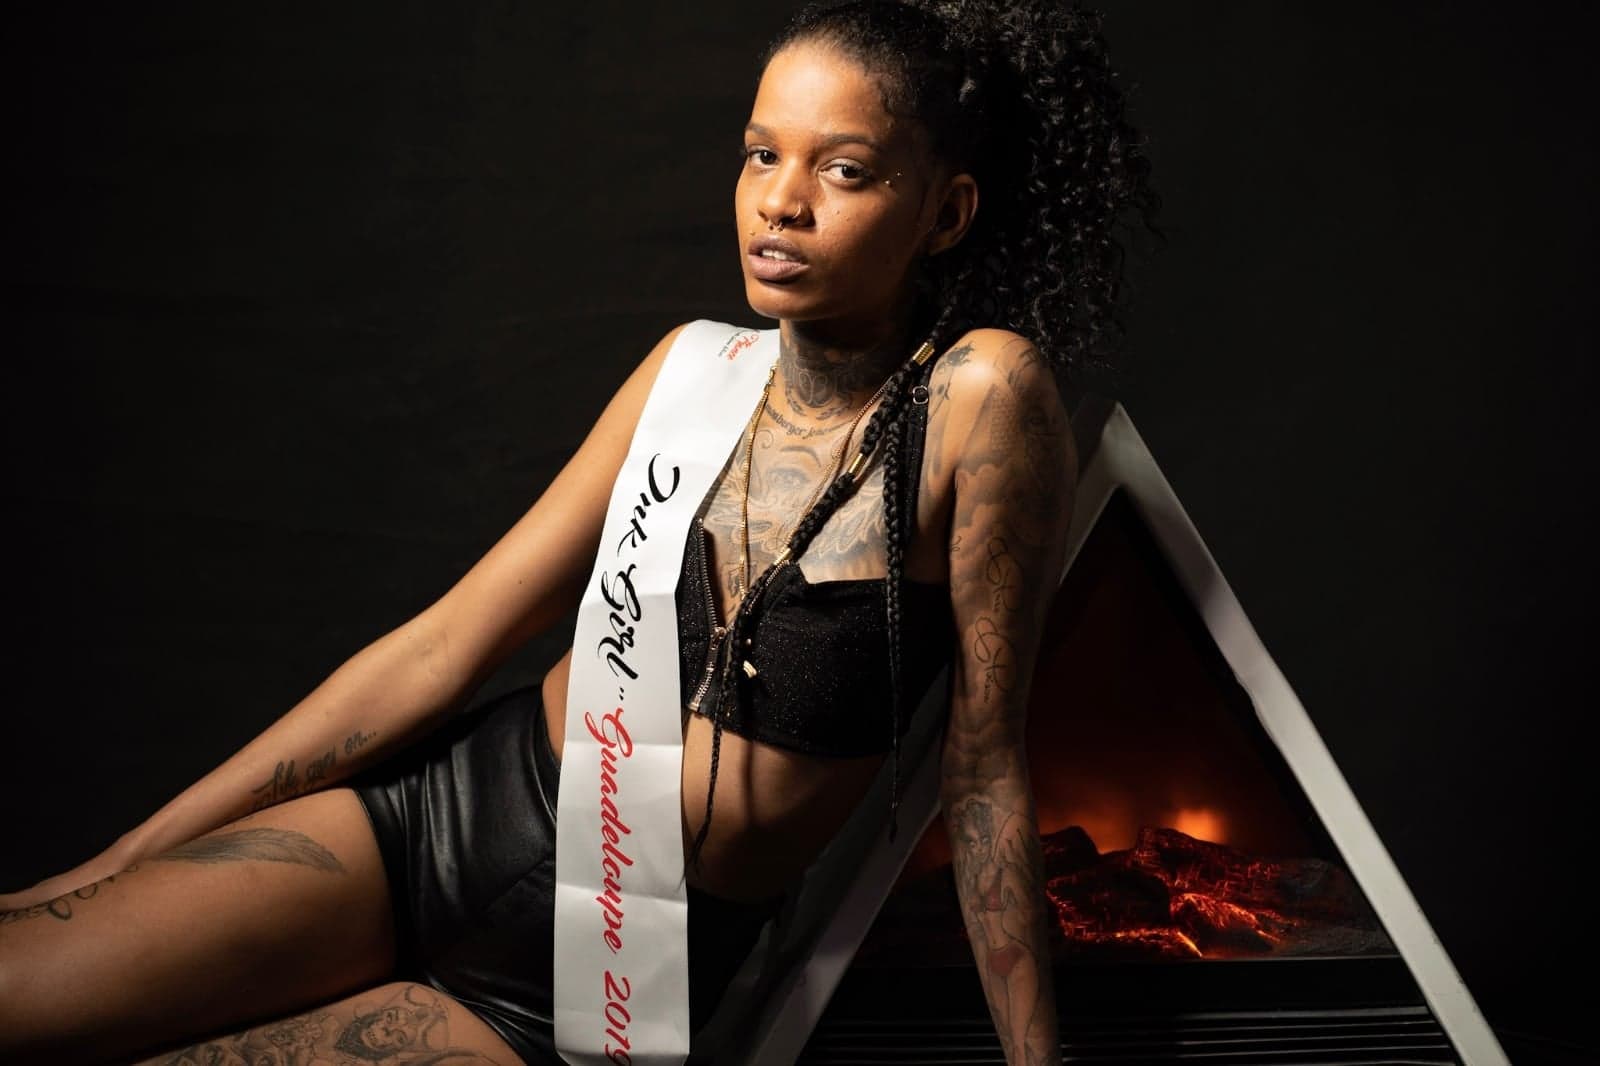     Une guadeloupéenne au concours national de la plus belle femme tatouée

